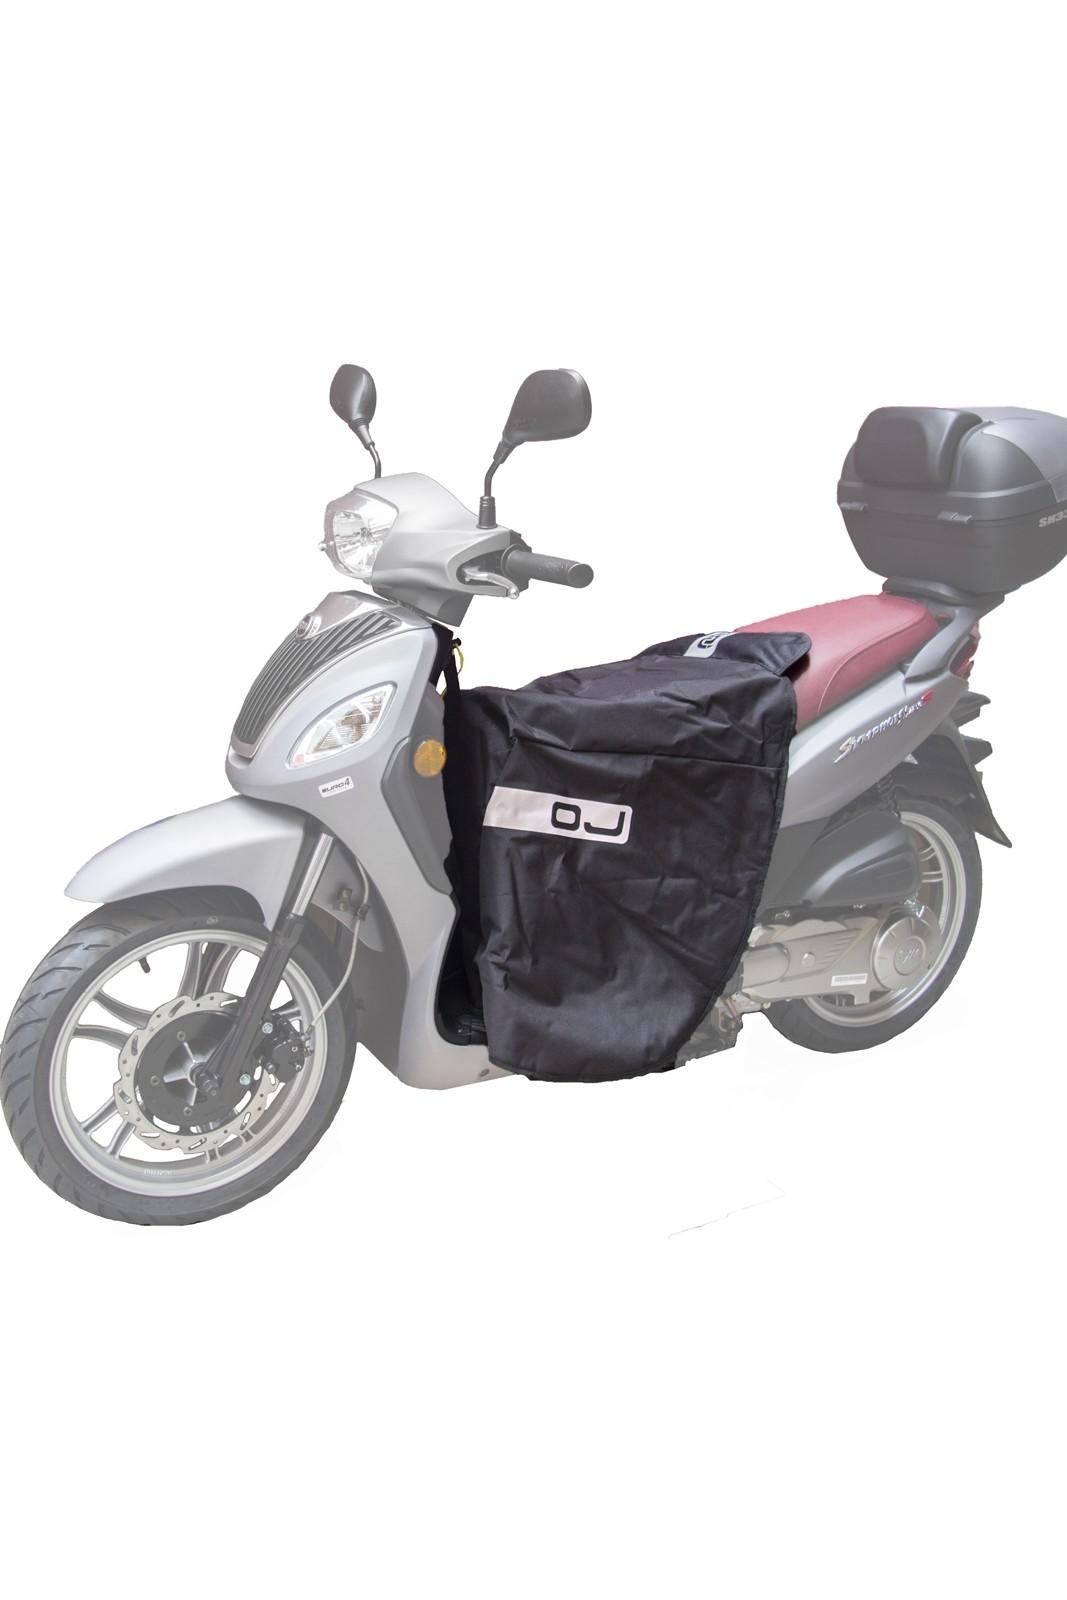 Coprigambe universale OJ C002 Fast impermeabile in poliestere per scooter a  montaggio rapido